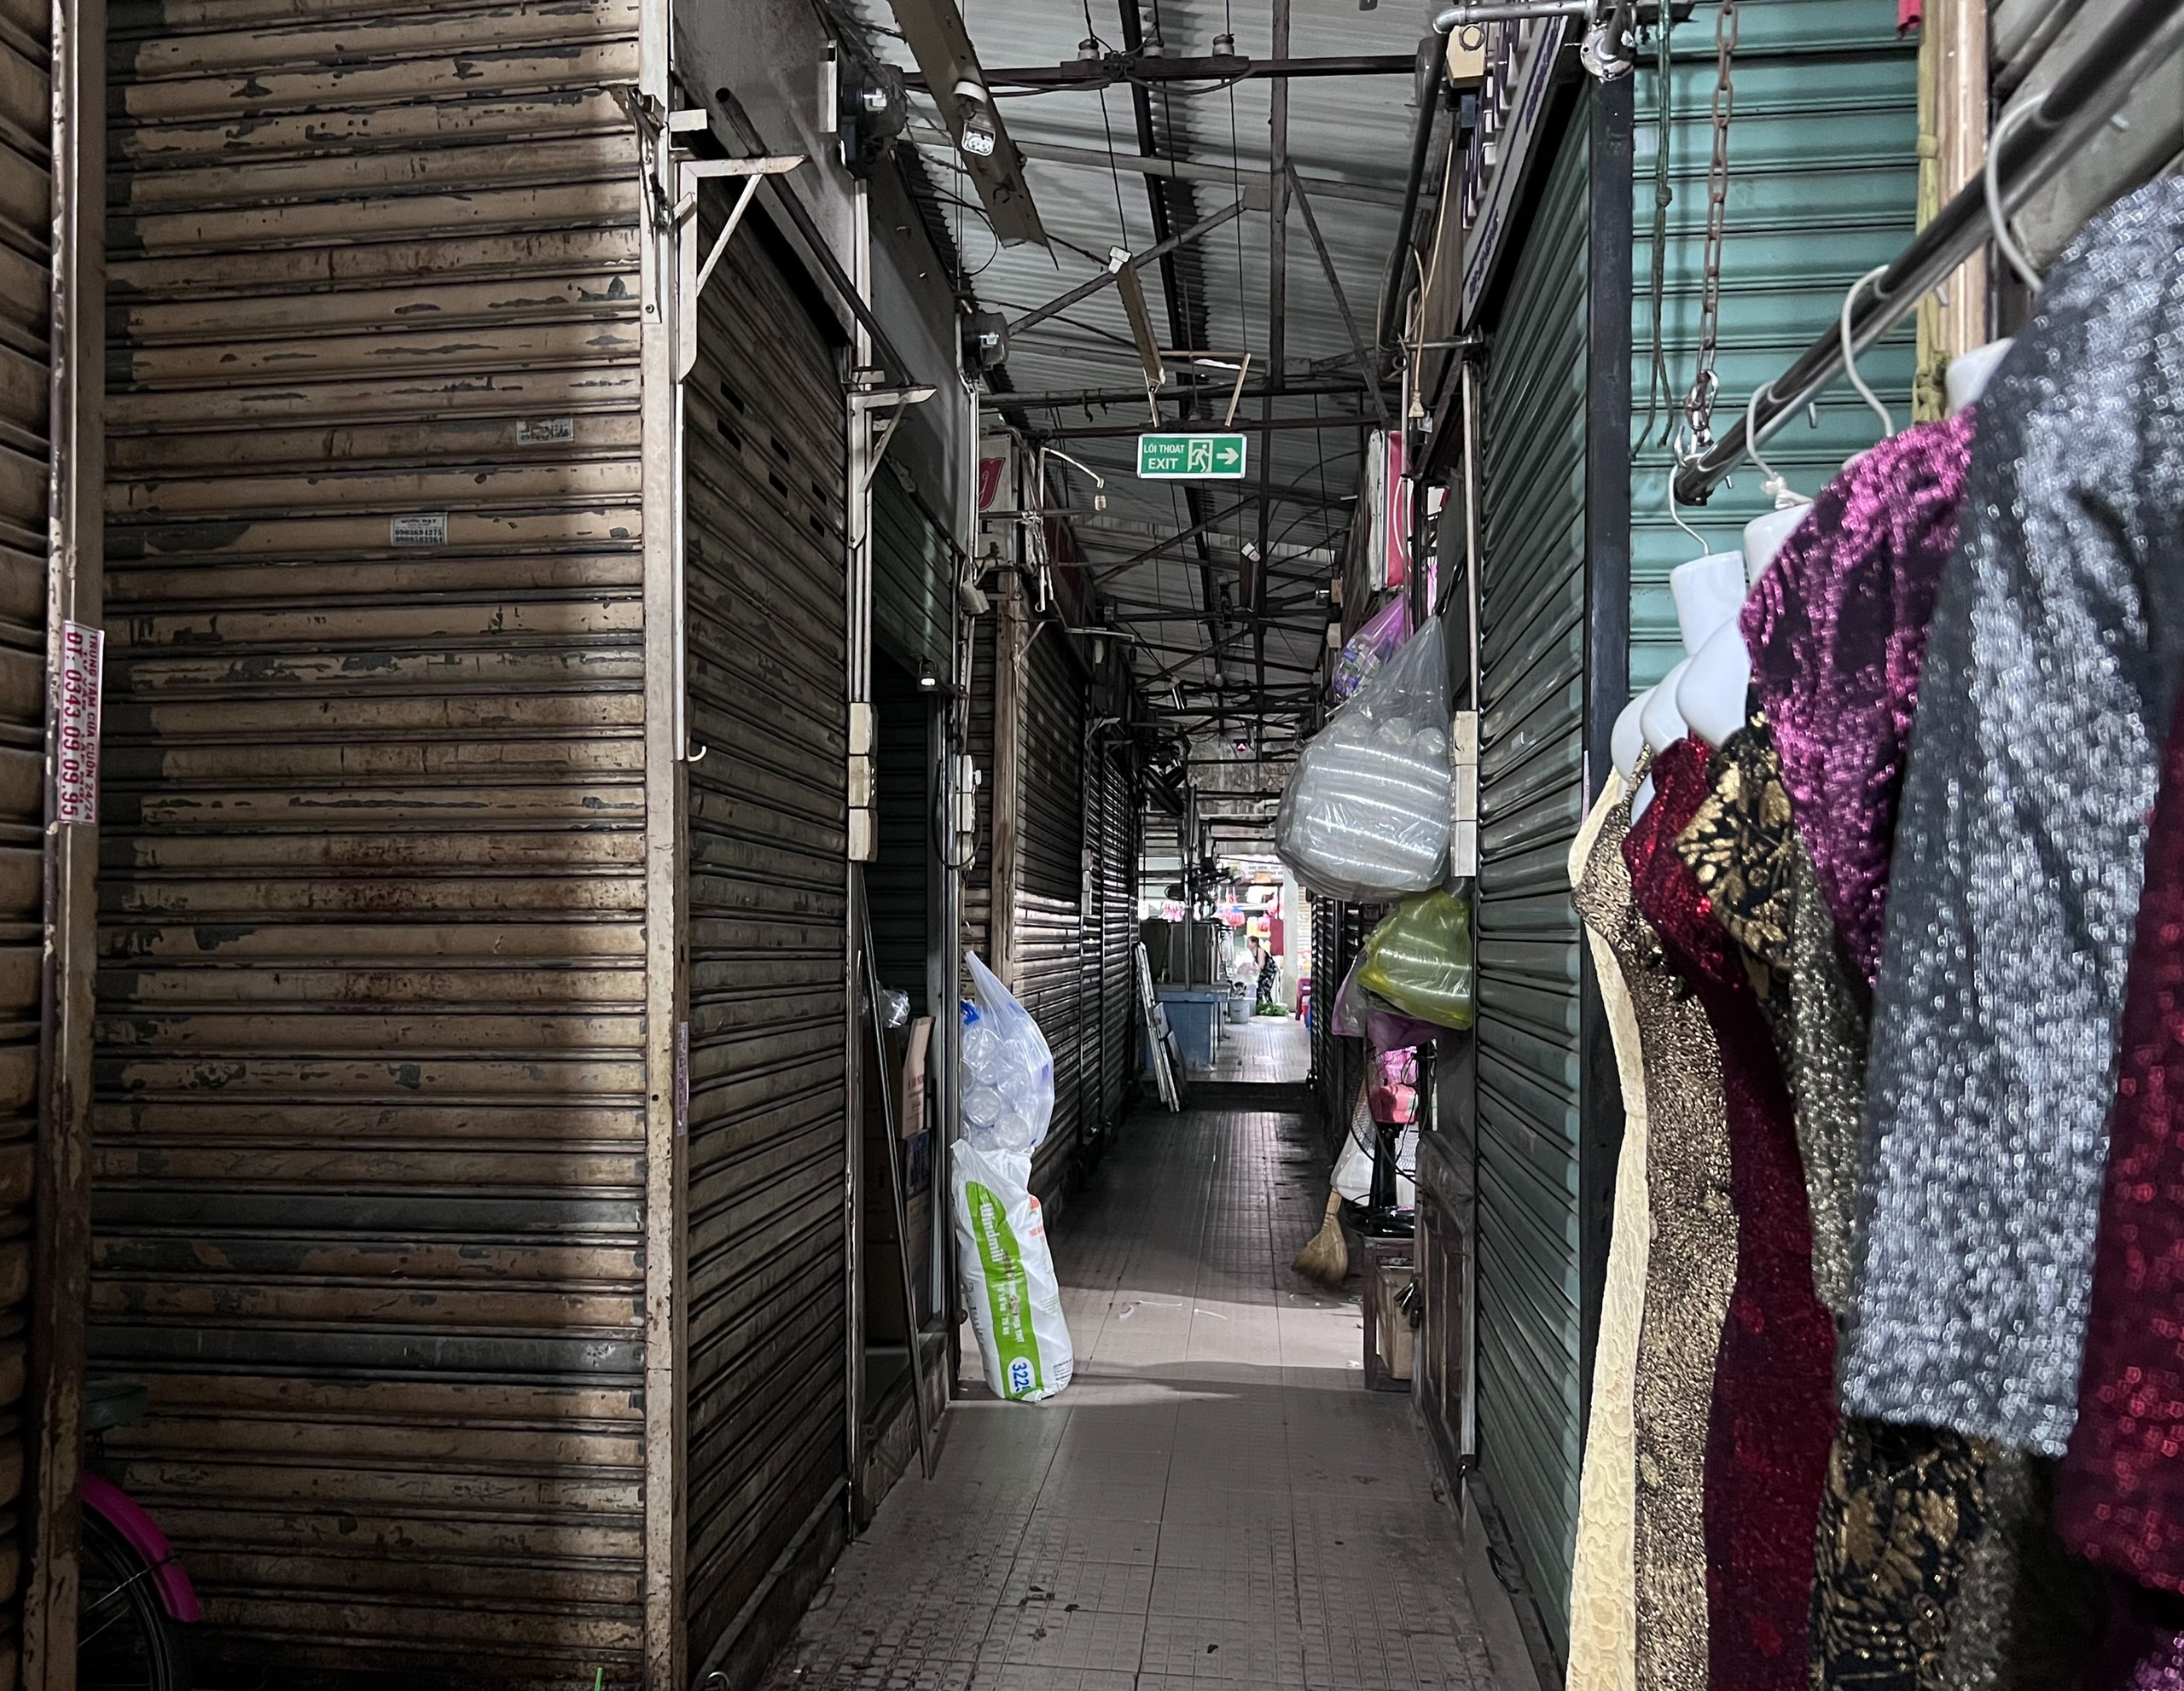 Nhiều ki ốt đóng cửa, lối vào khu trung tâm mua sắm quần áo ở chợ Phạm Văn Hai tối om